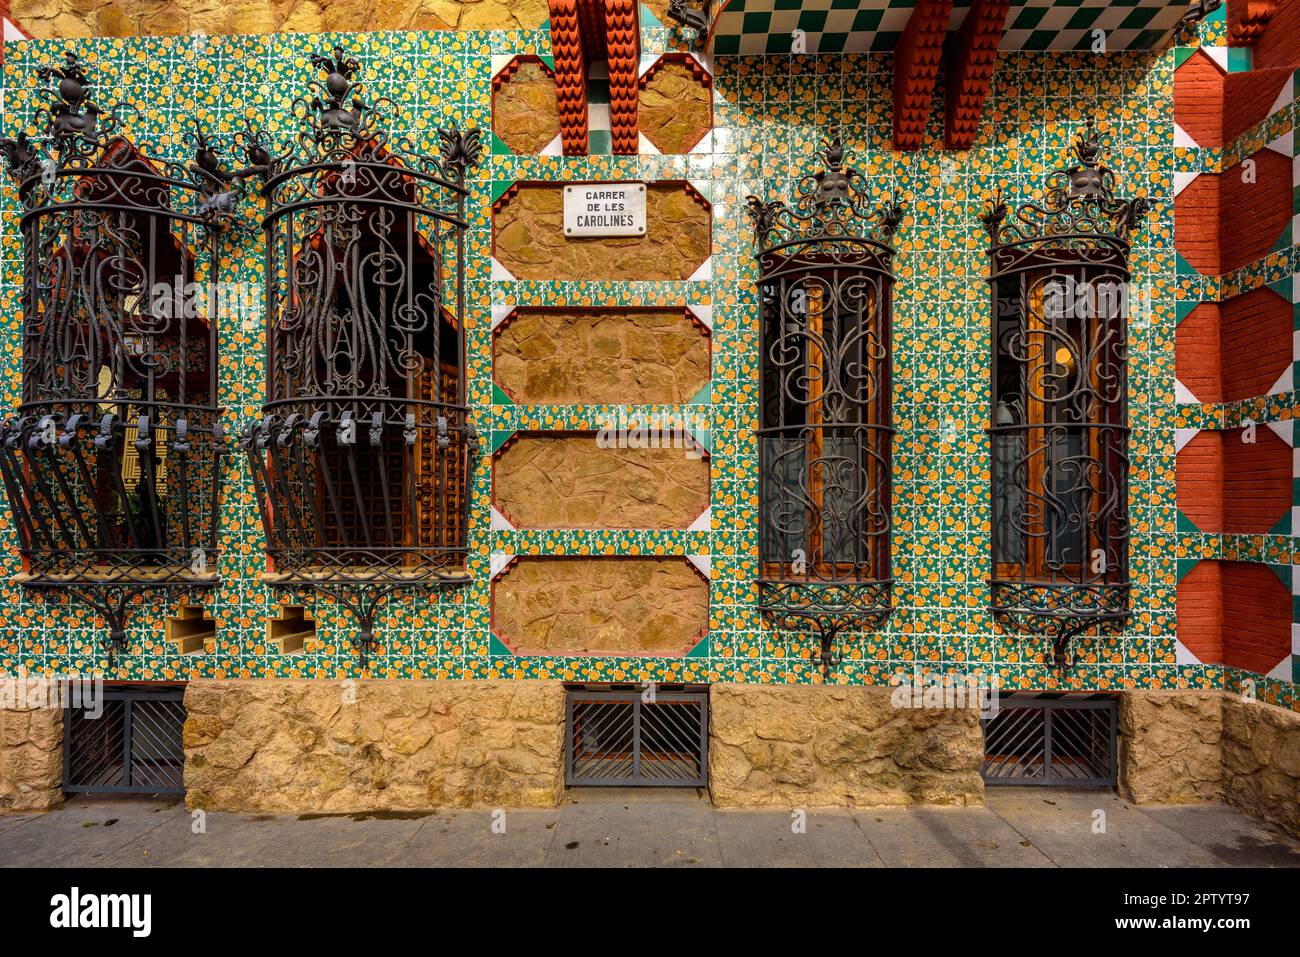 Finestra sulla facciata esterna della Casa Vicens, progettata da Antoni Gaudí con ispirazioni orientali (Barcellona, Catalogna, Spagna) Foto Stock